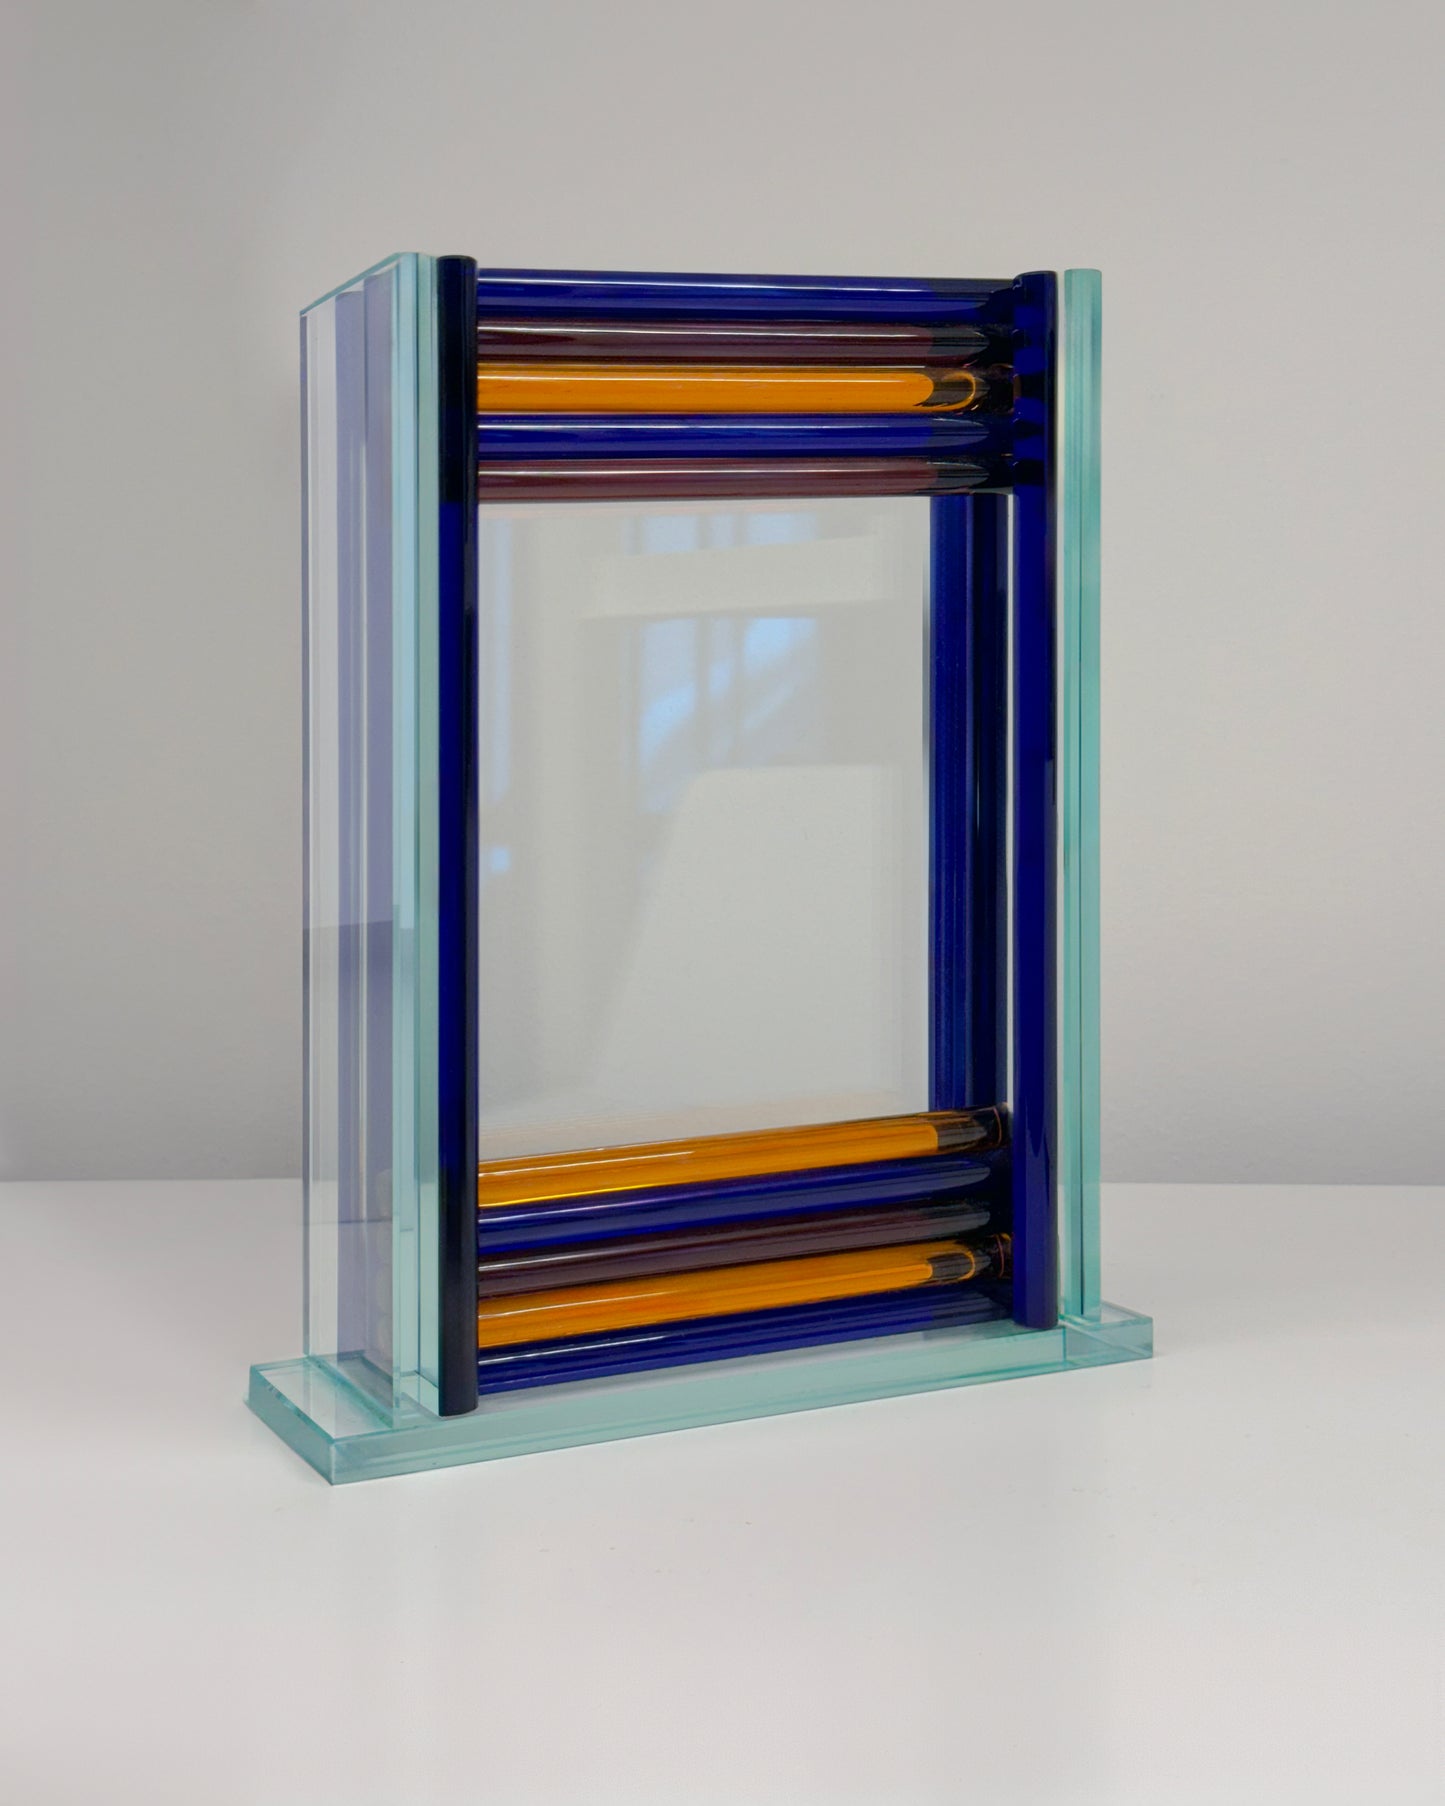 The Chroma Glass Frame